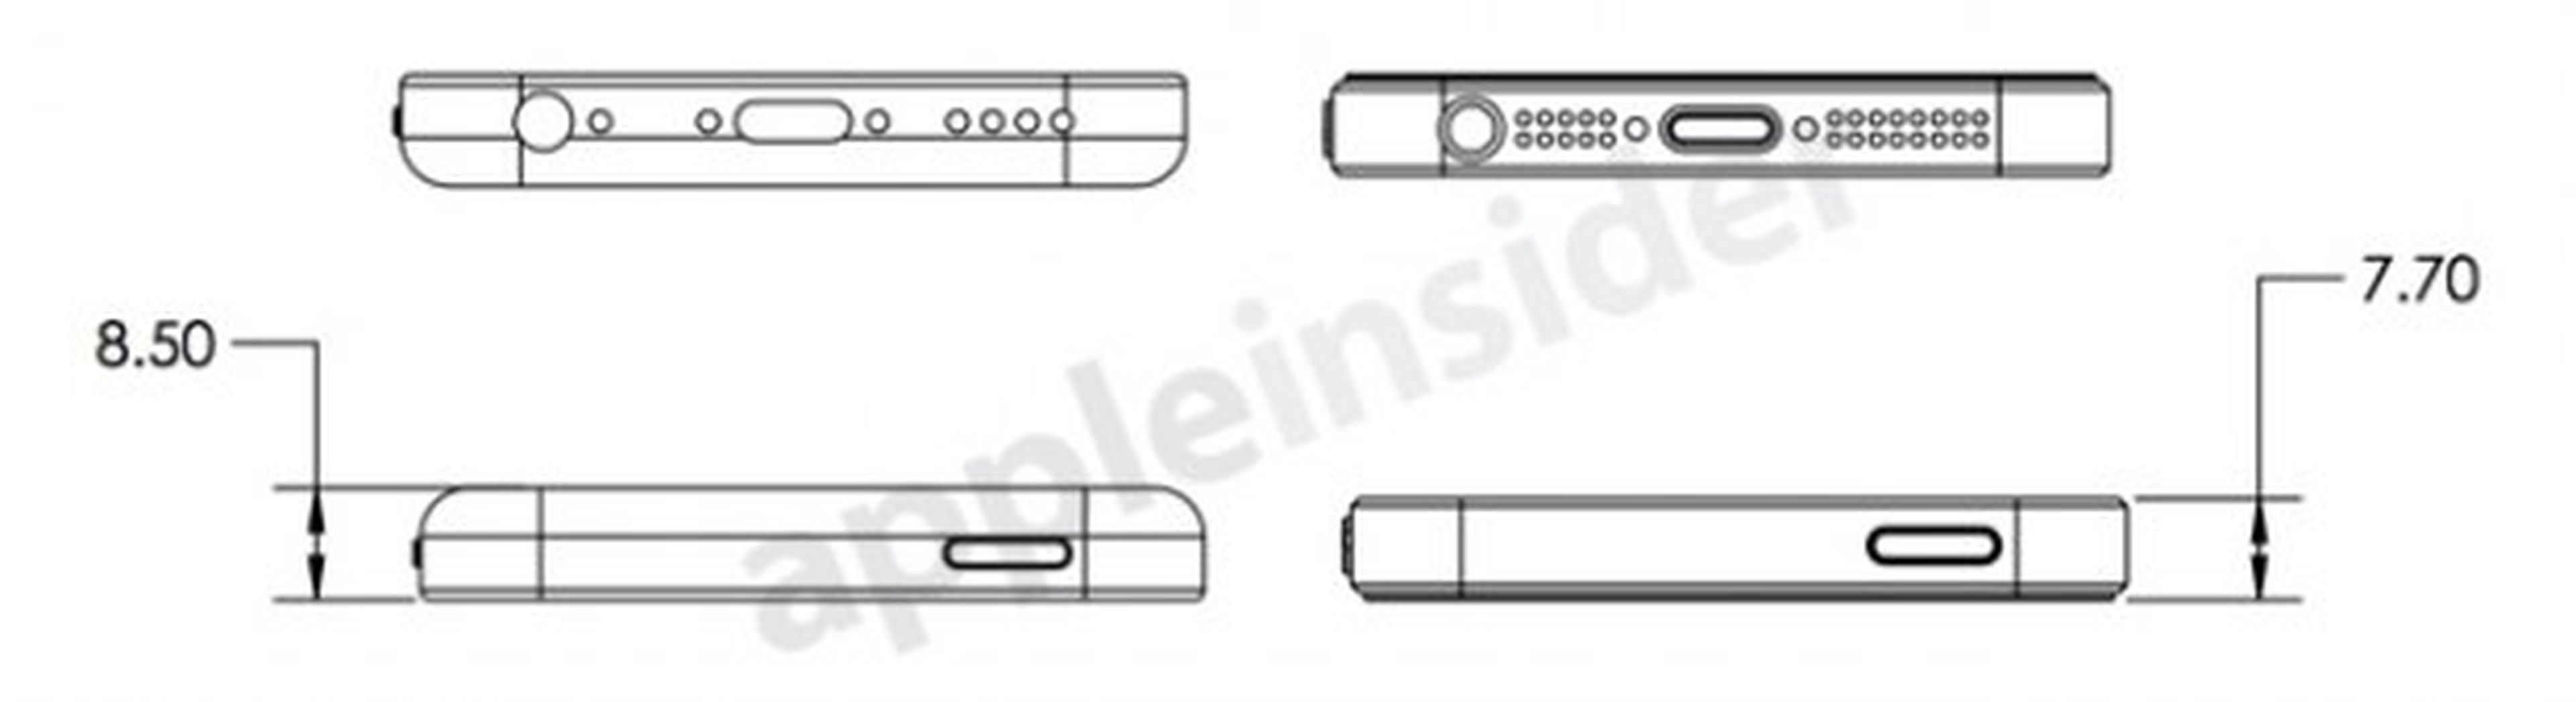 ¿Diseños y esquemas filtrados del iPhone 5S y iPhone Lite?